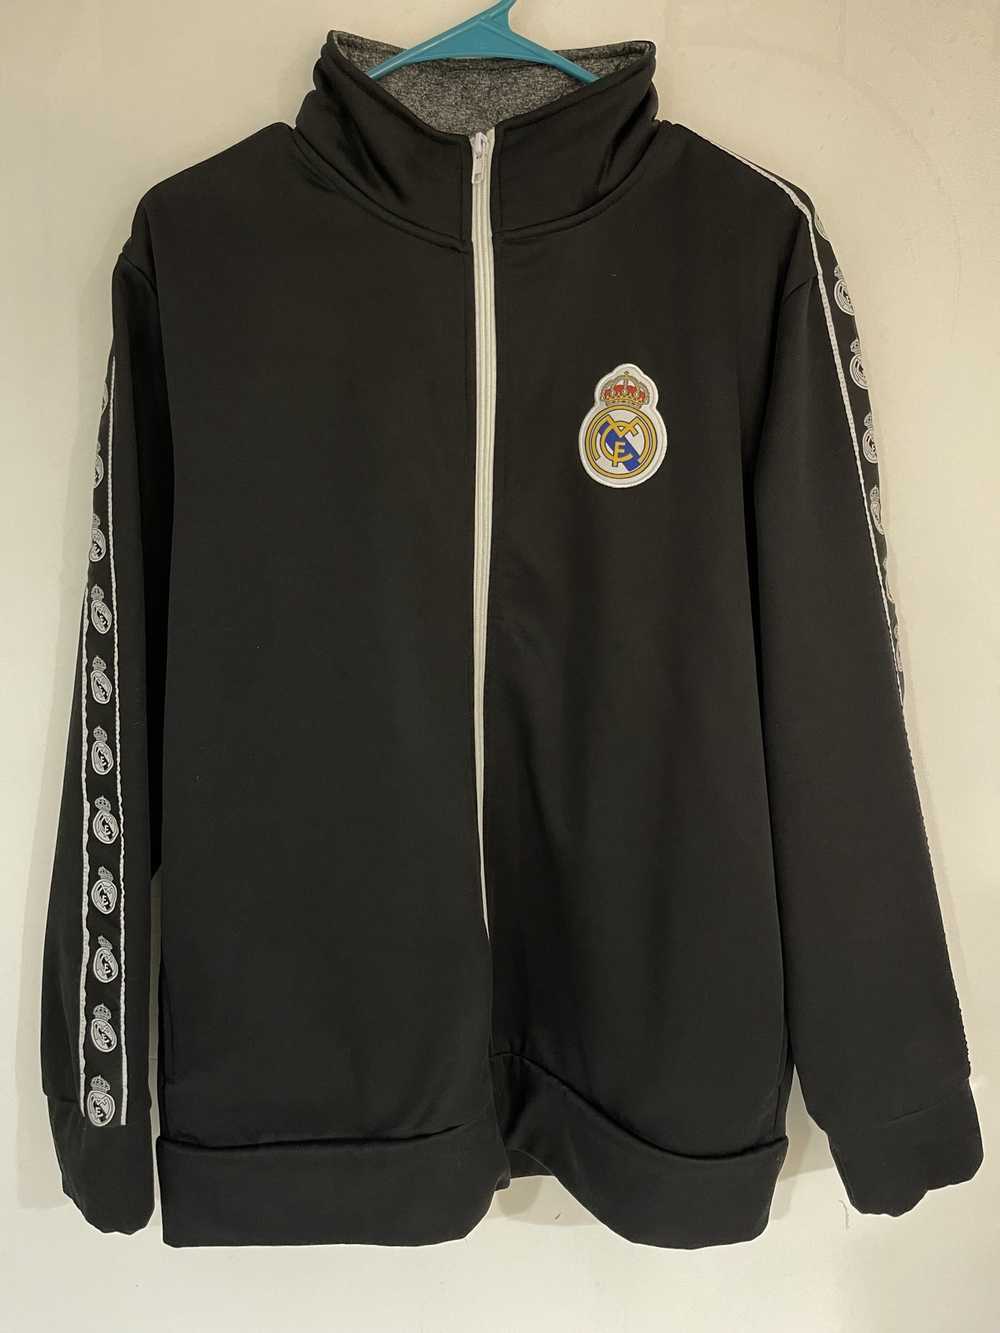 Real Madrid Real Madrid Jacket - image 1